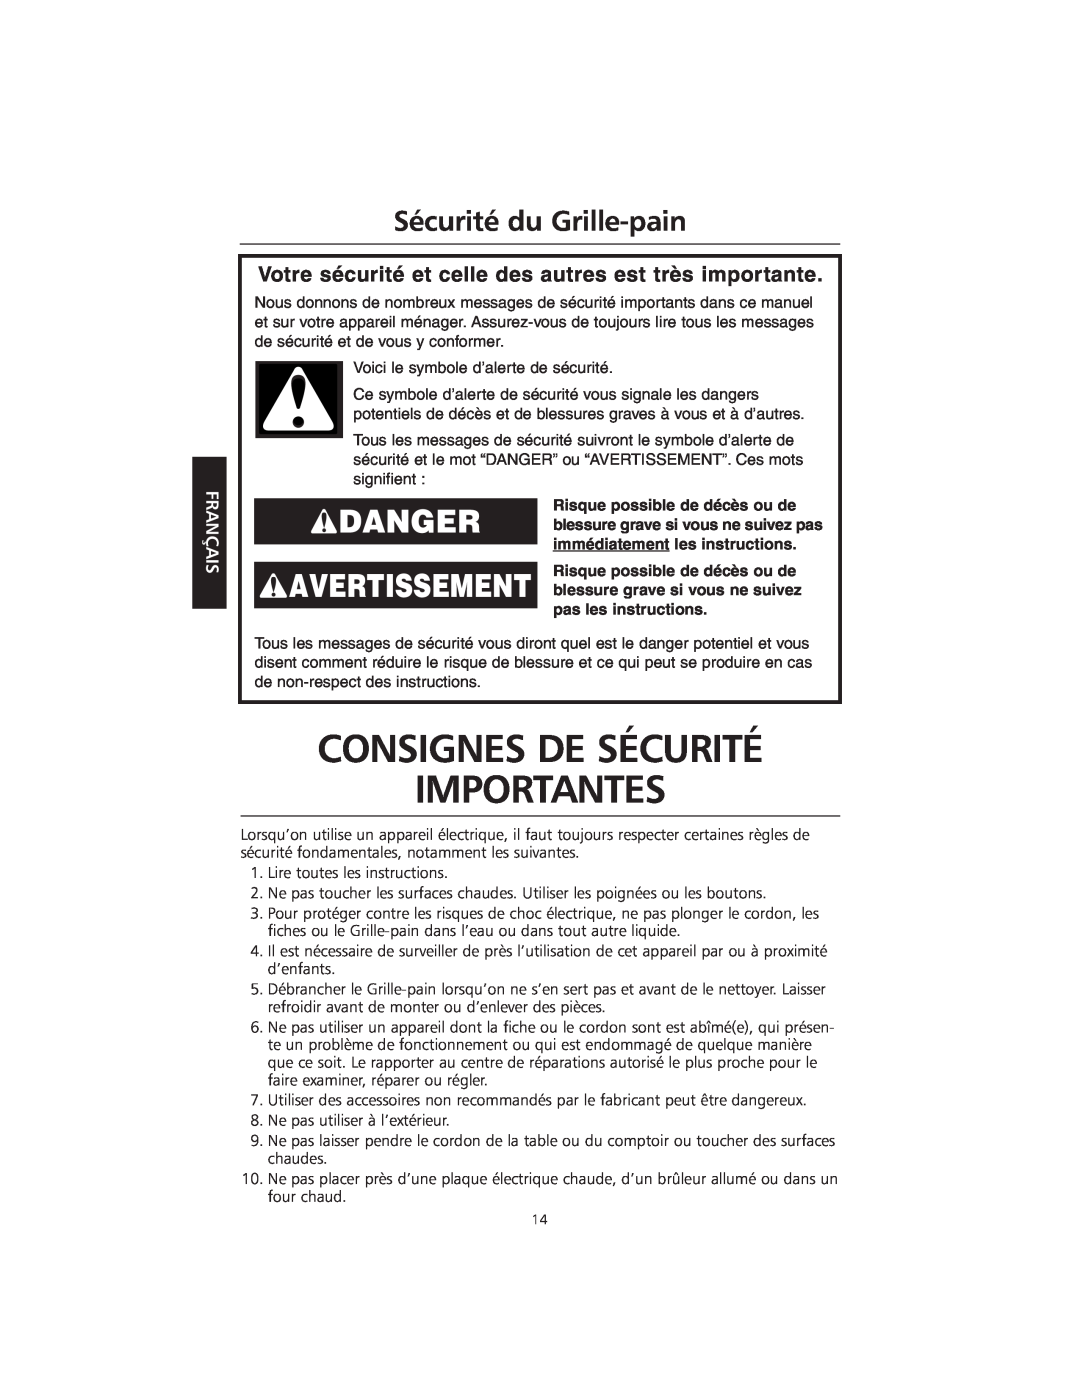 KitchenAid KMTT200 Consignes De Sécurité Importantes, Sécurité du Grille-pain, Risque possible de décès ou de, Français 